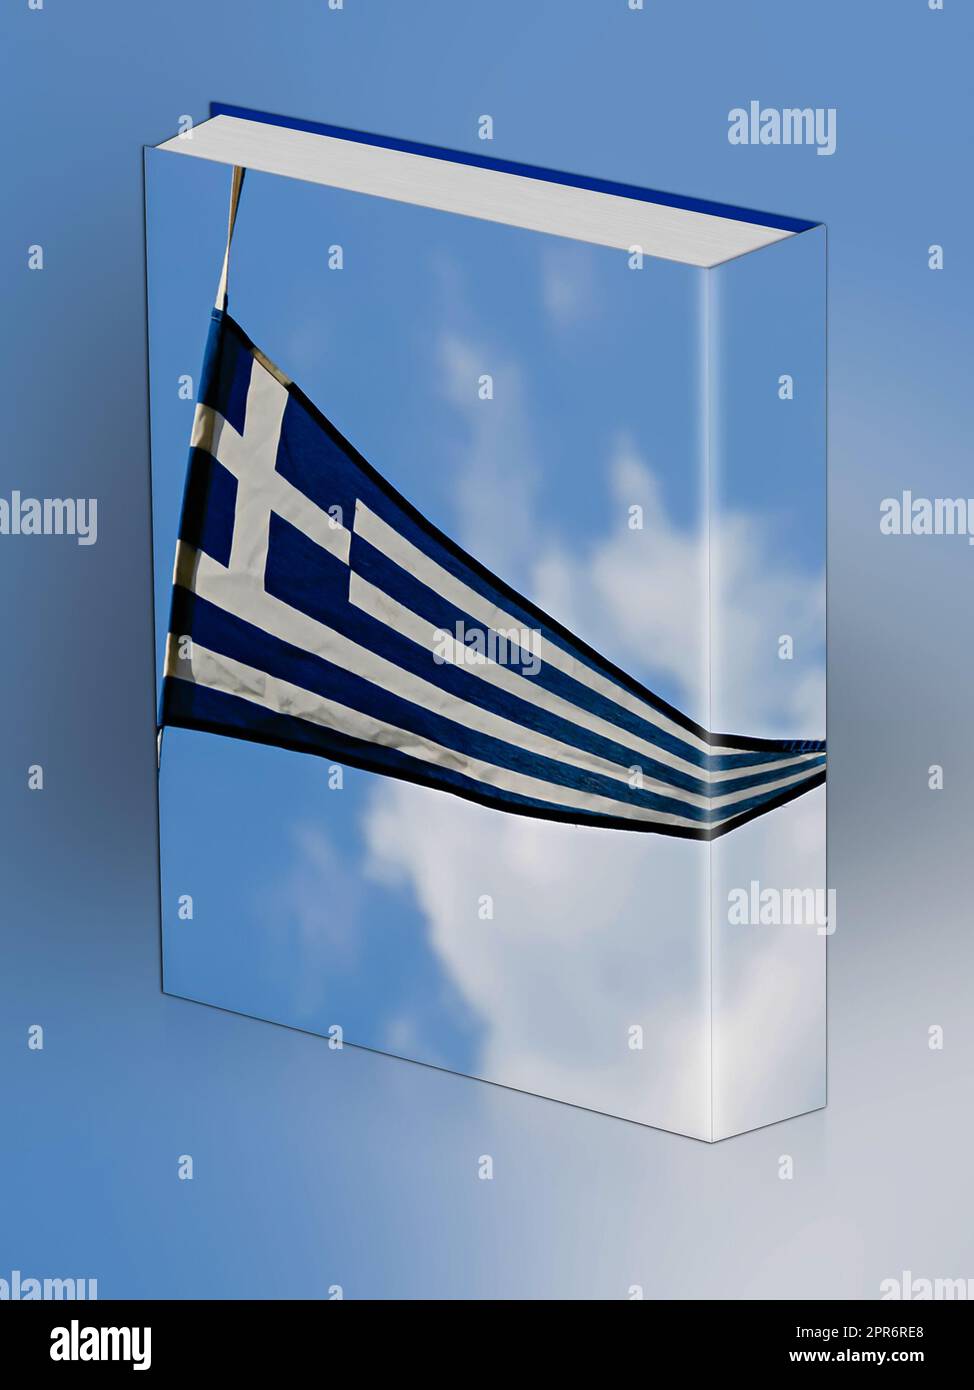 Ensign, drapeau national de la Grèce, République hellénique Banque D'Images